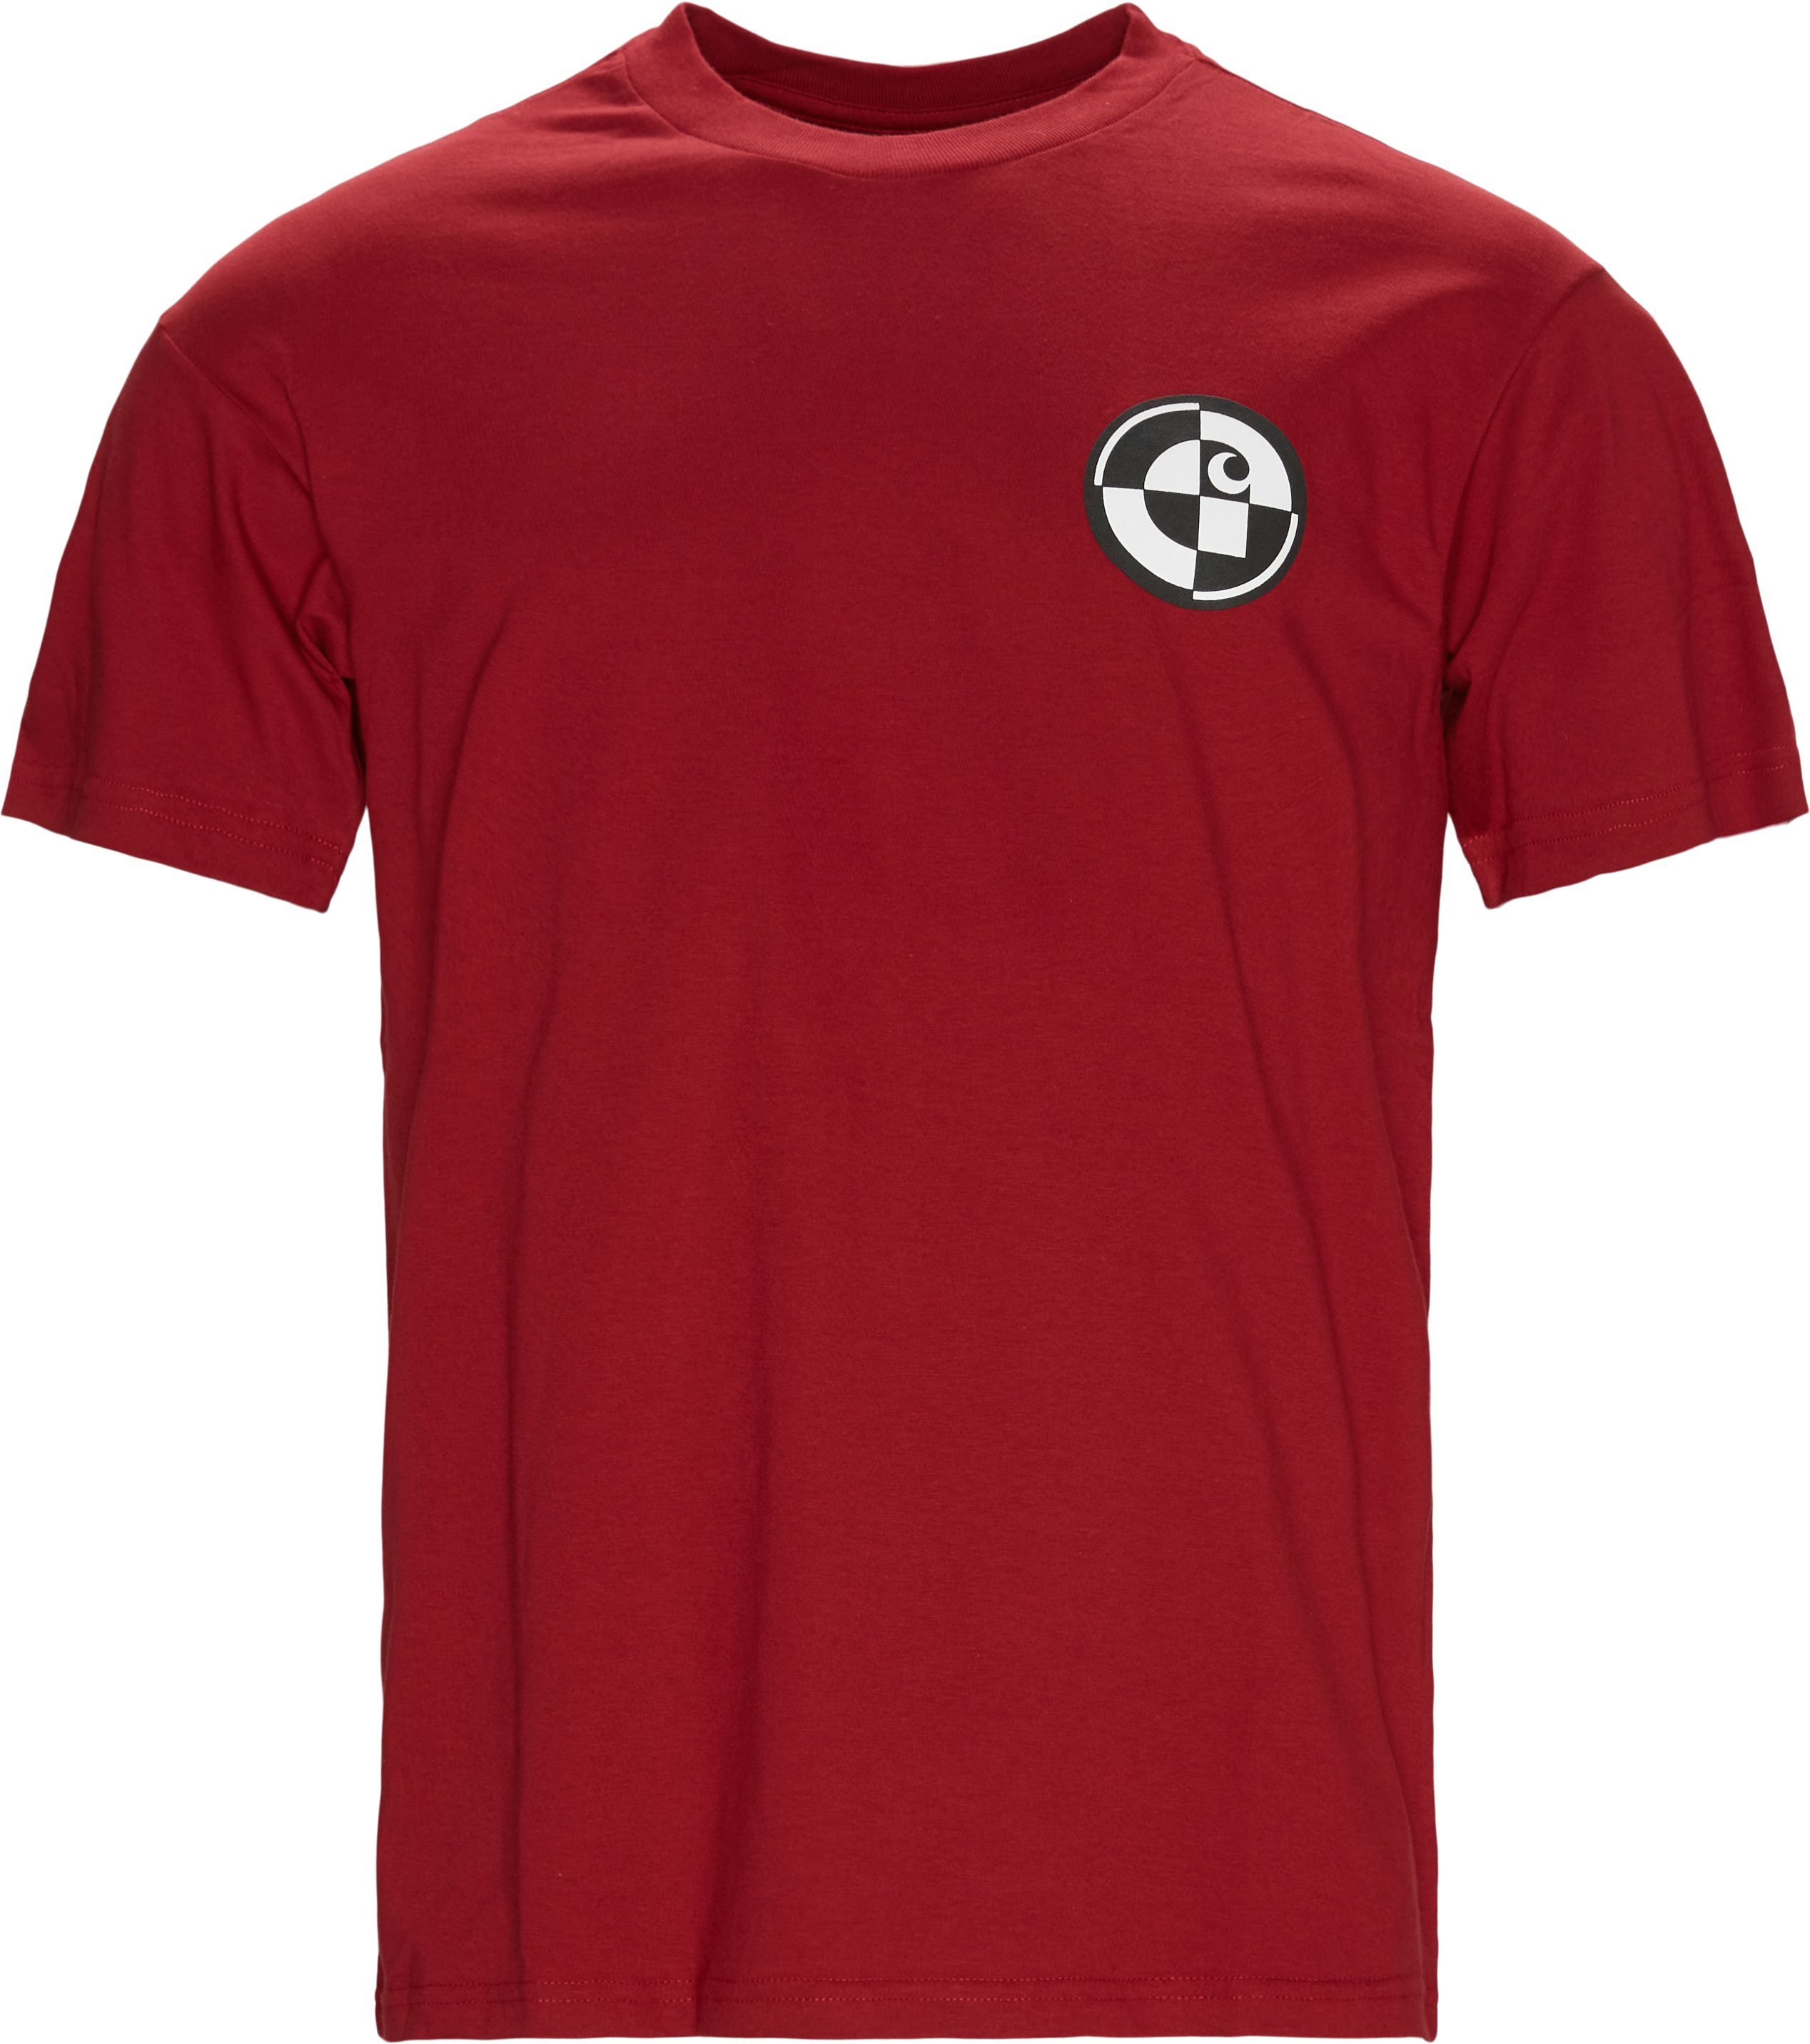 Range Tee - T-shirts - Regular fit - Red